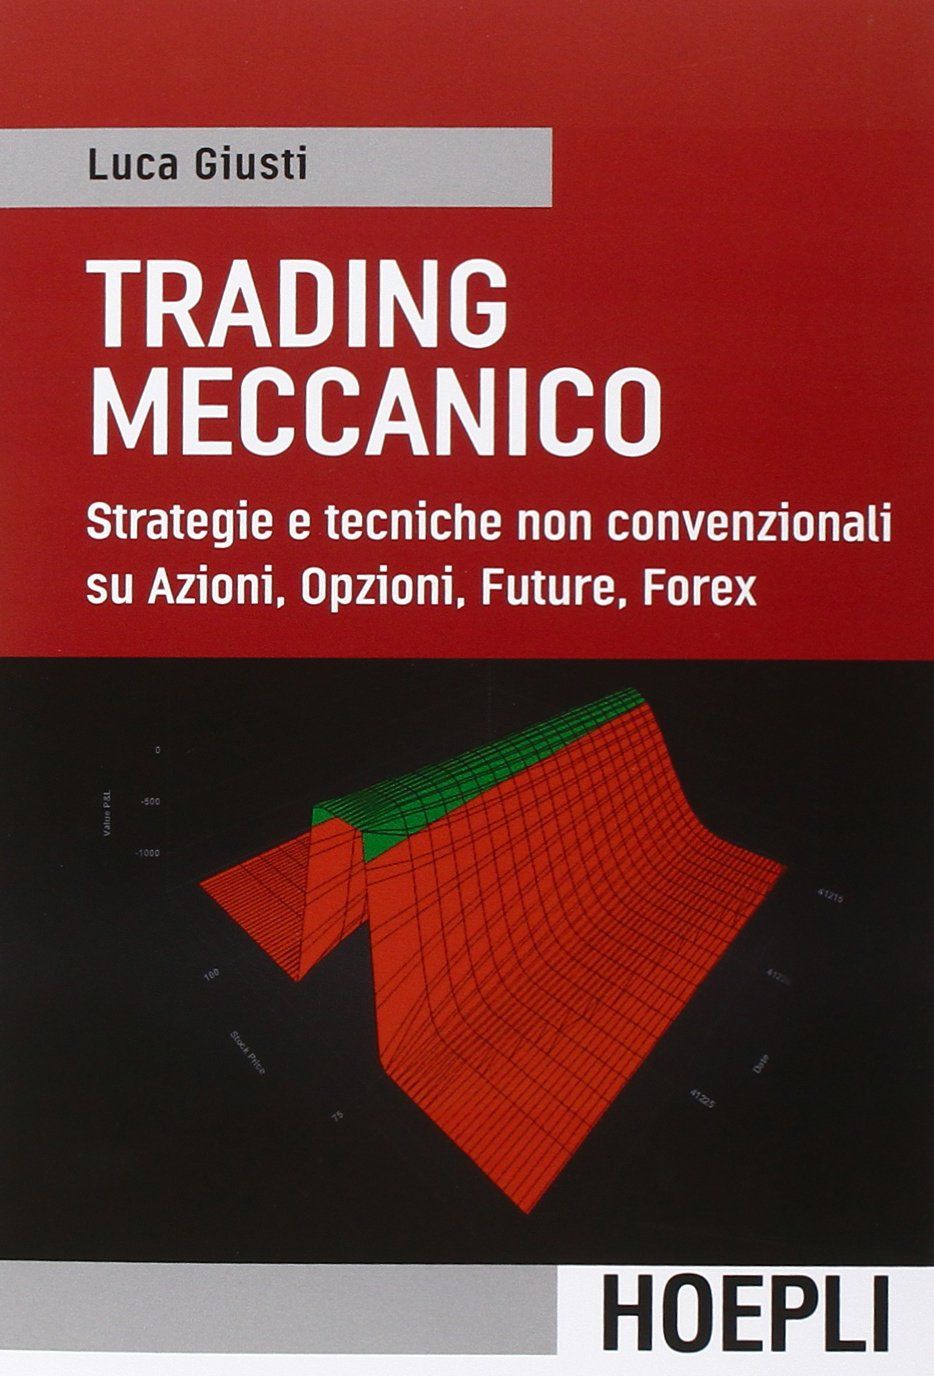 Trading meccanico Strategie e tecniche non convenzionali su Azioni, Opzioni, Future, Forex, di Luca Giusti